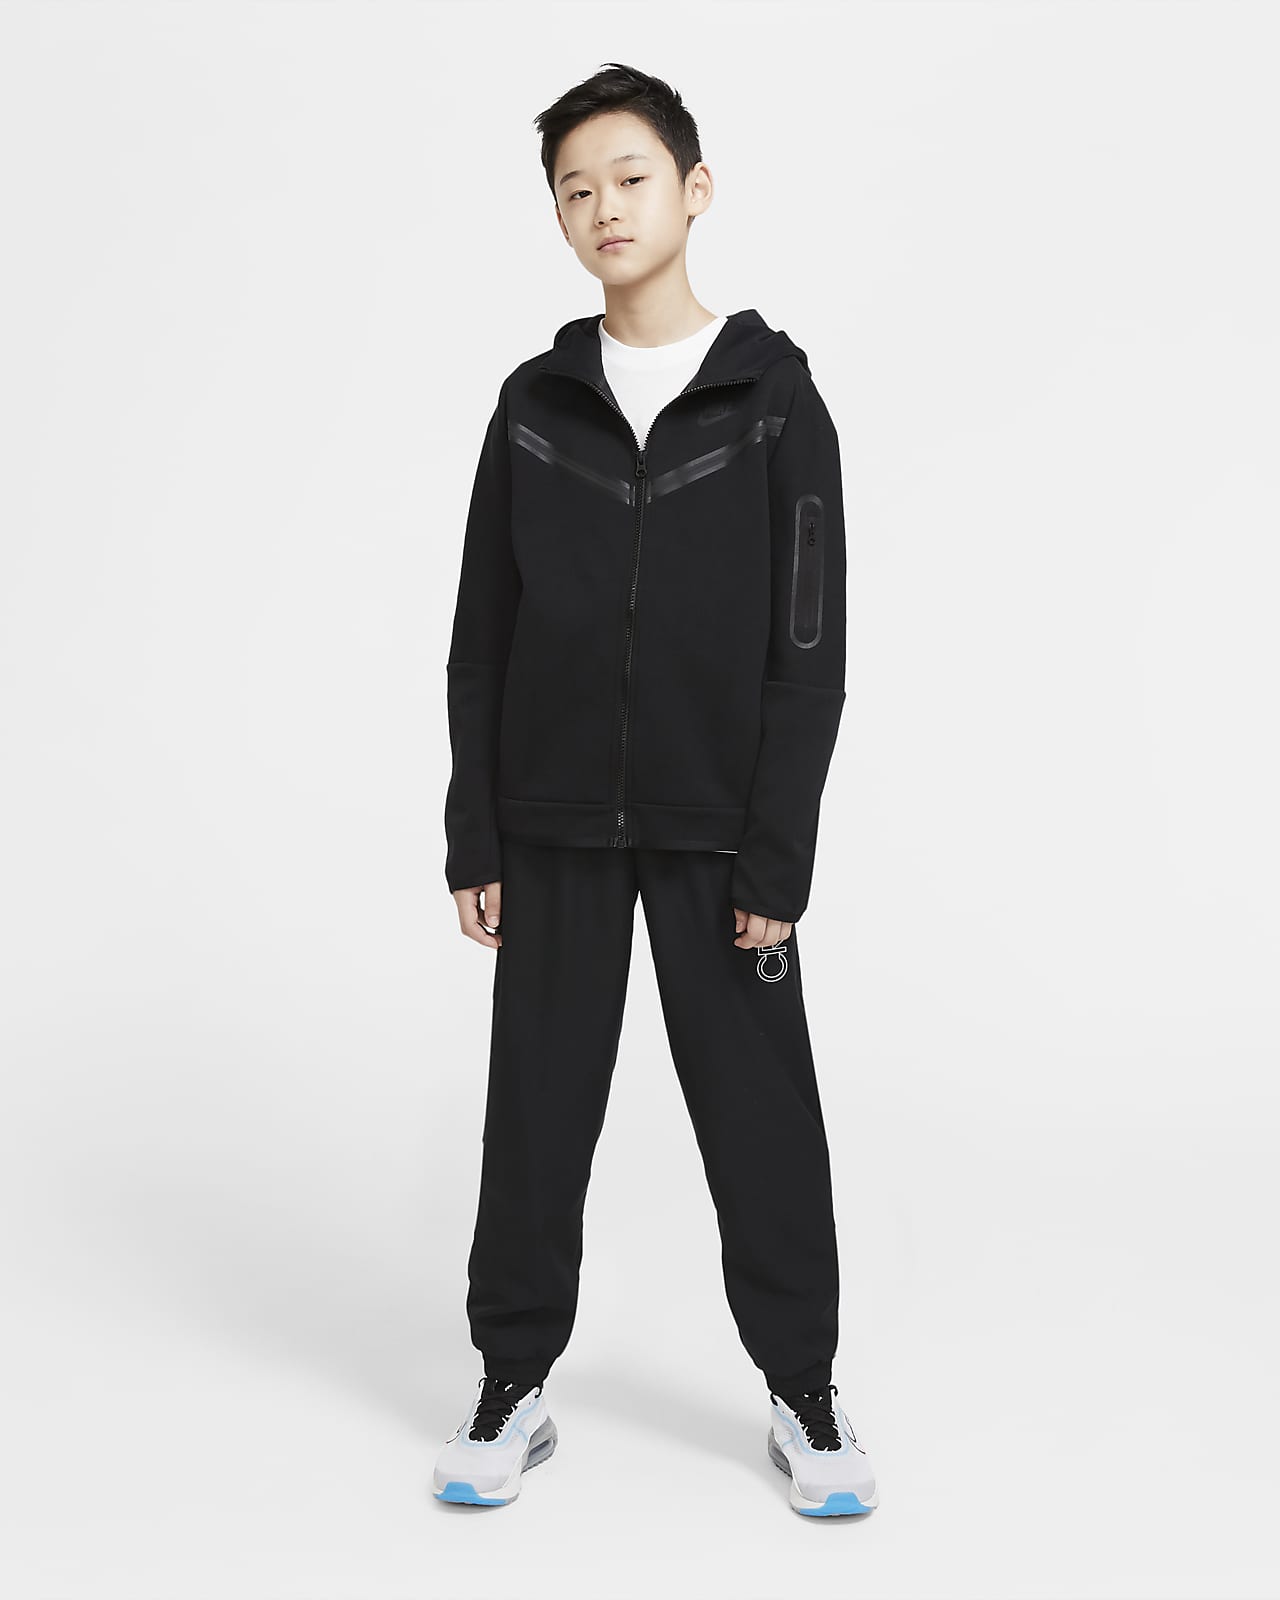 Nike Sweat à Capuche NSW Tech Fleece - Noir/Gris/Blanc Enfant